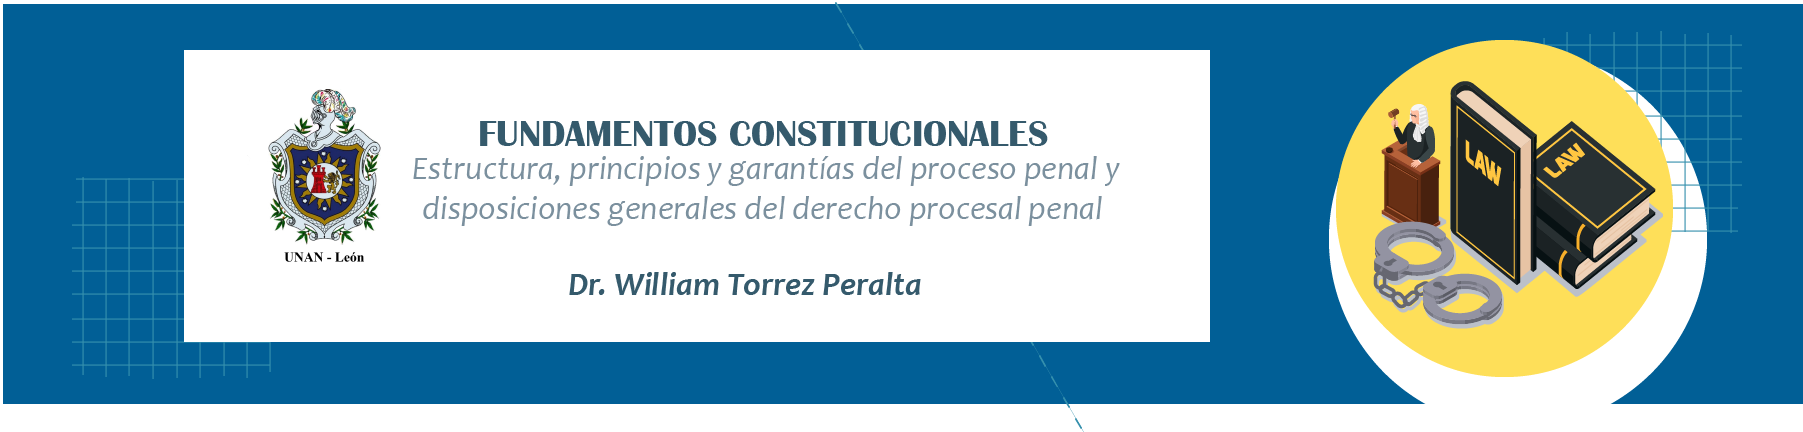 Fundamentos constitucionales, estructura, principios y garantías del proceso penal y disposiciones generales del derecho procesal penal